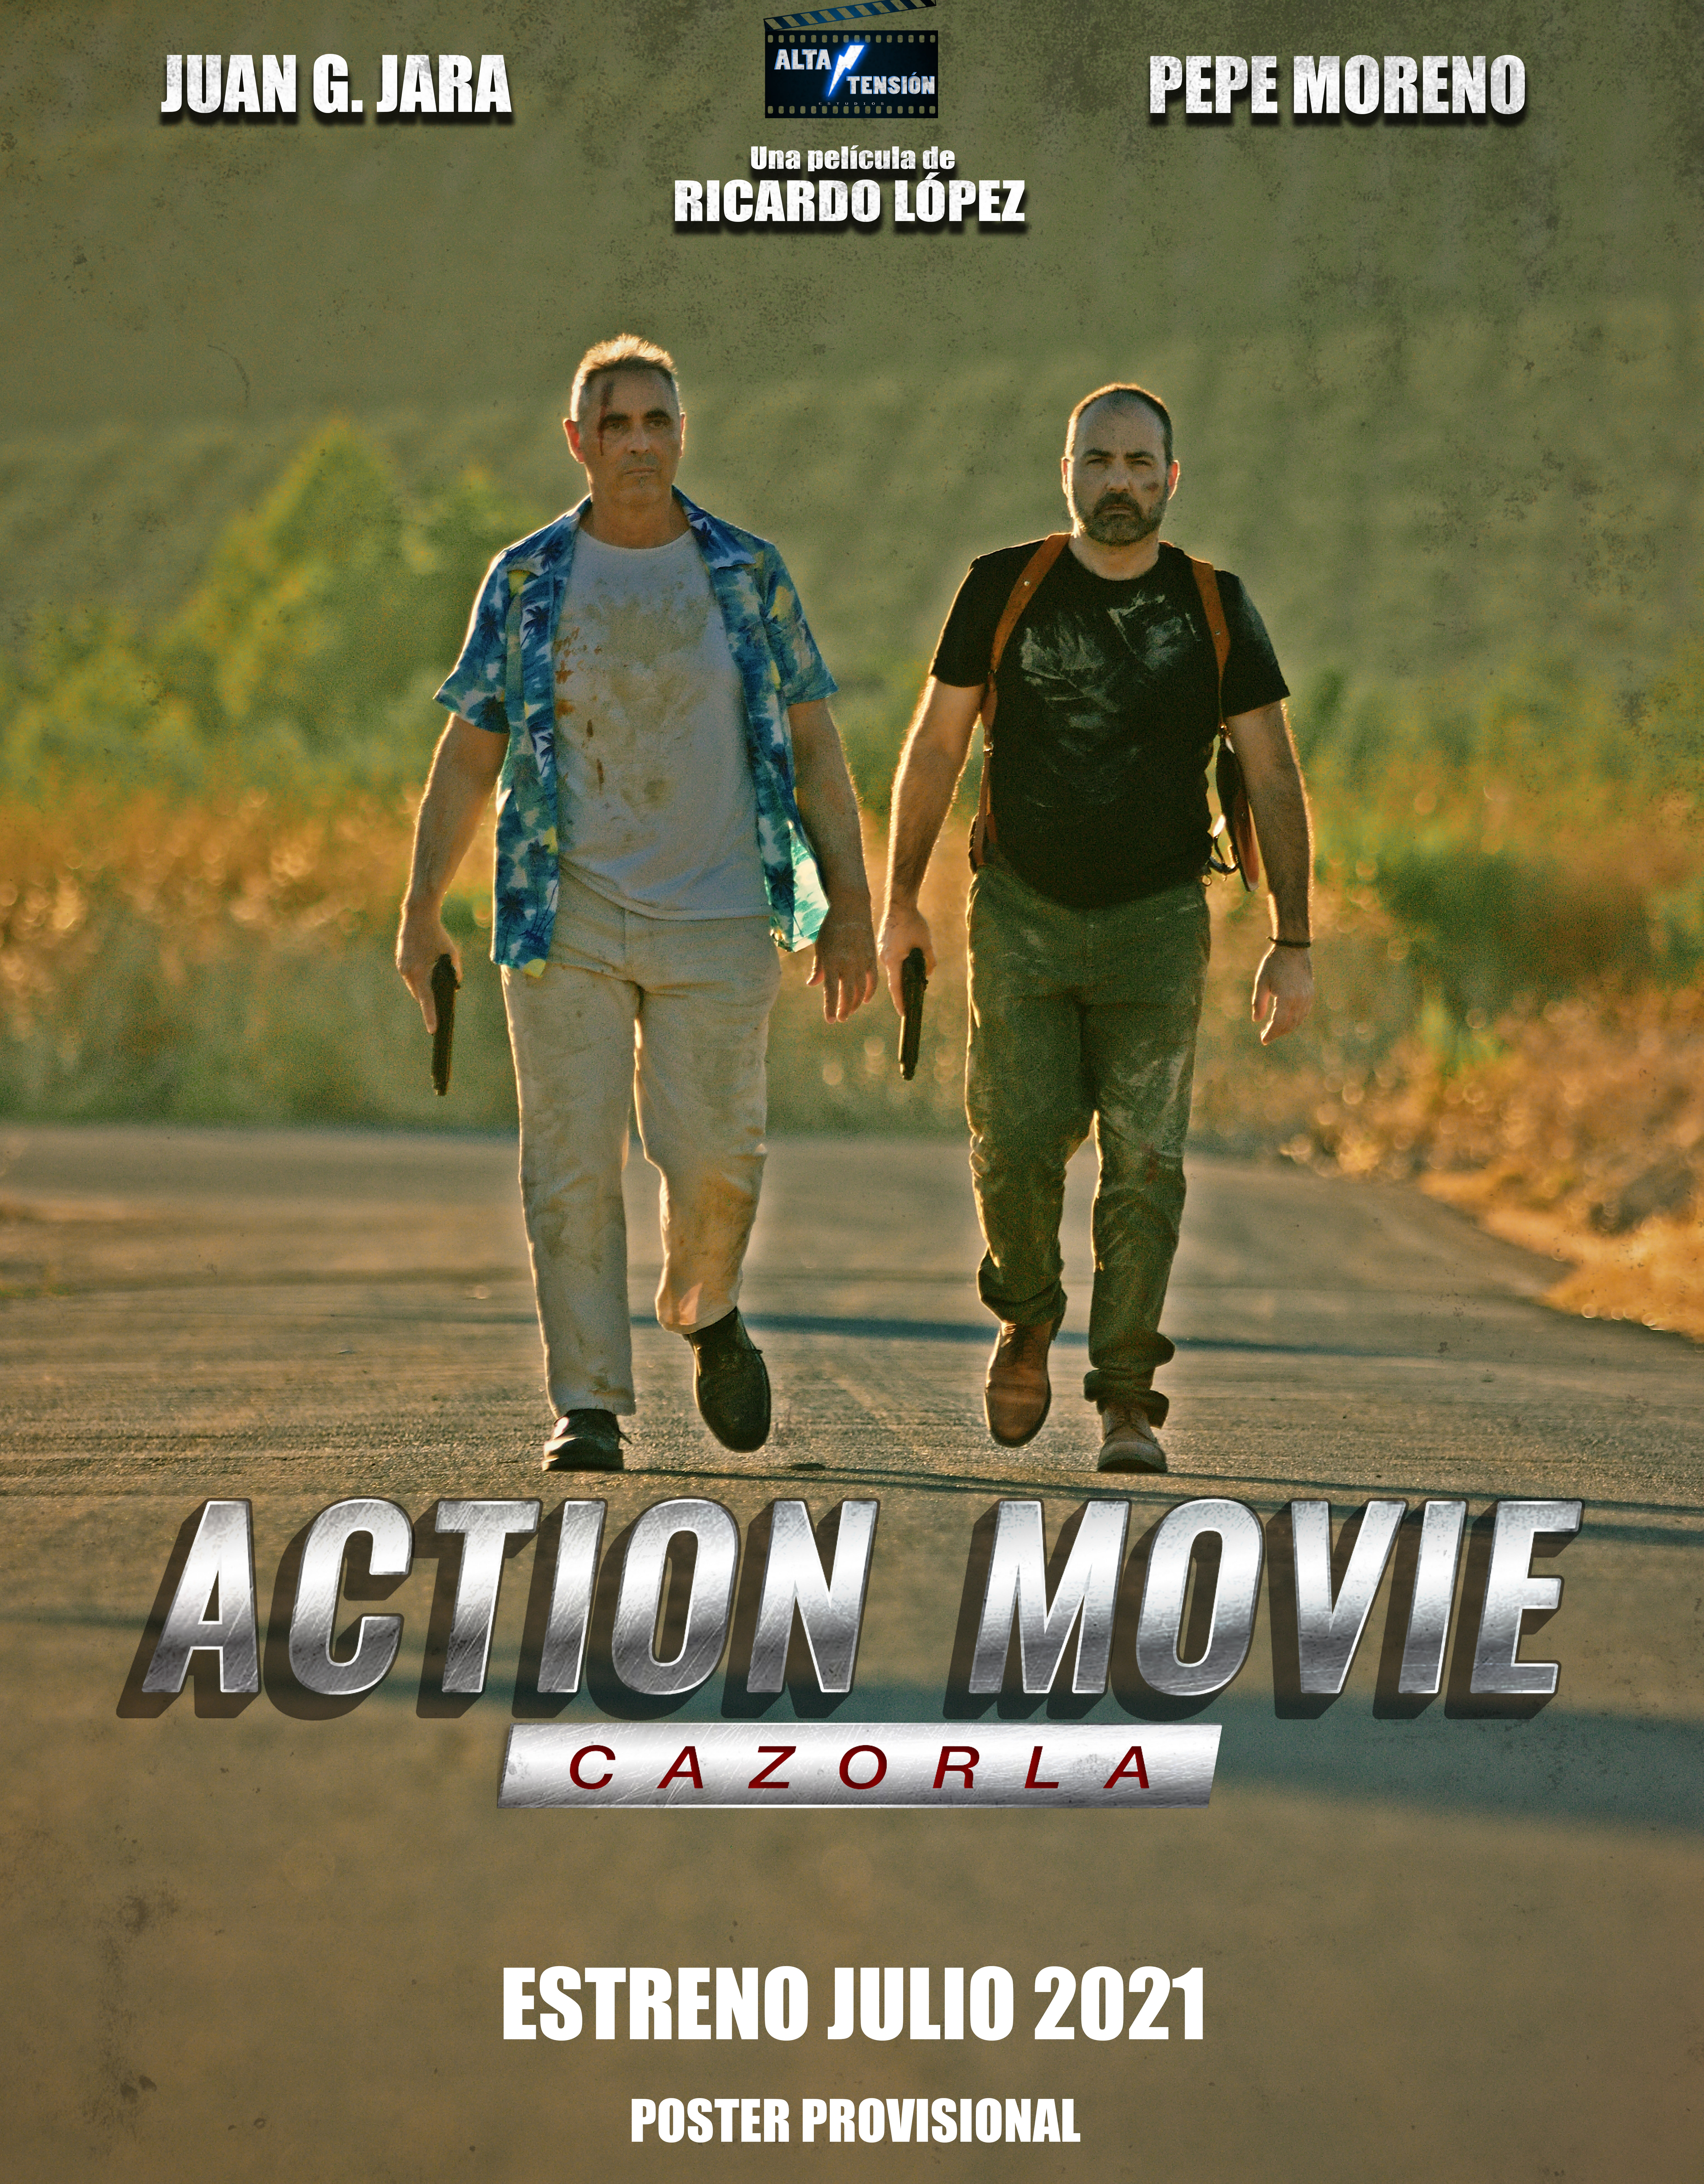 Смотреть Action Movie Cazorla (2021) на шдрезка